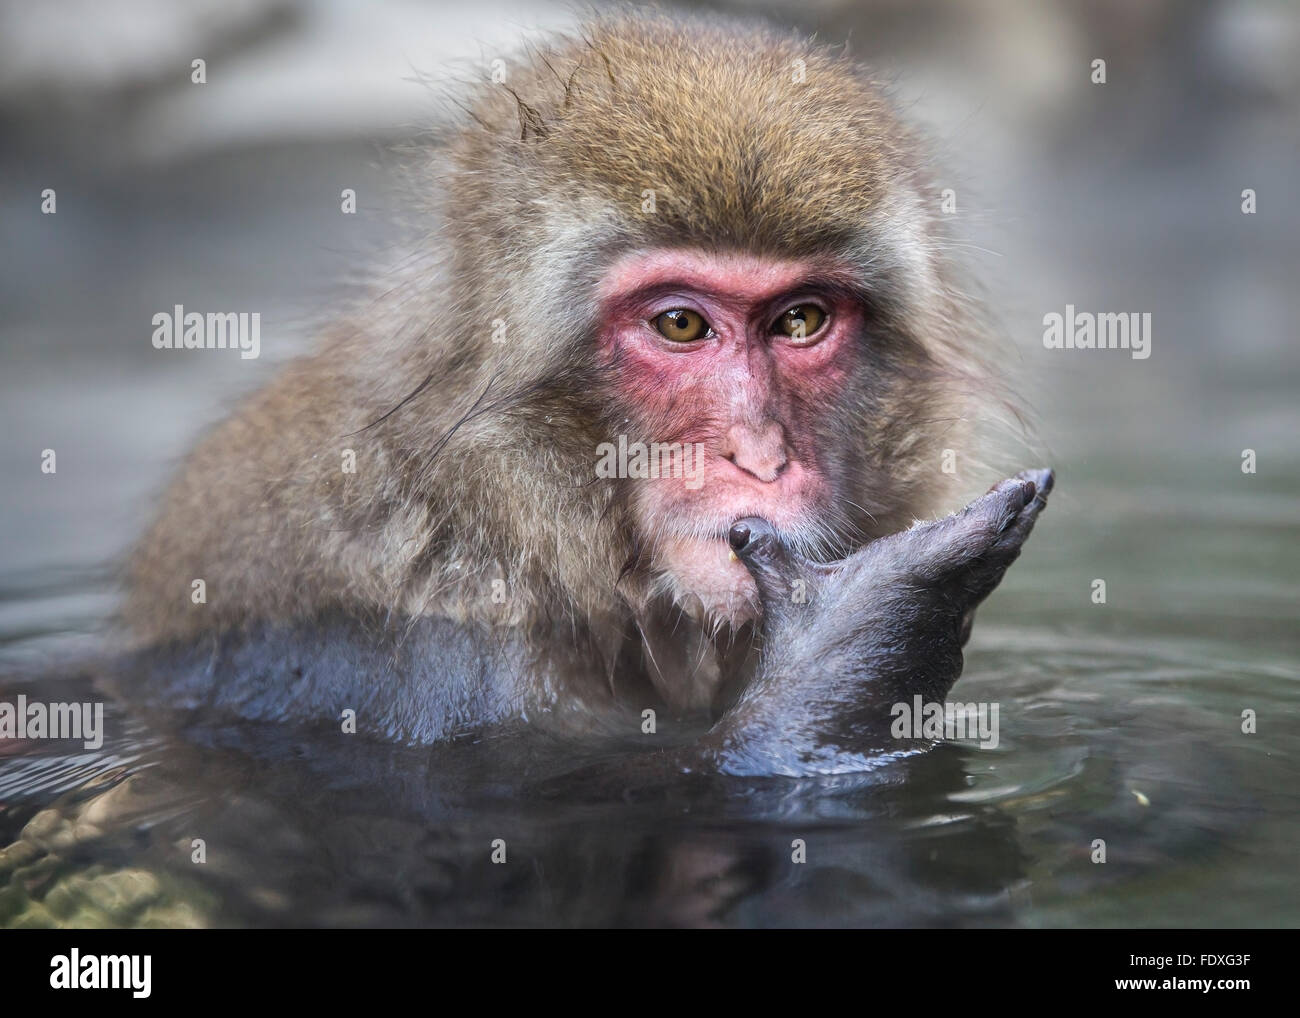 snow monkeys in hot spring at Nagano, Japan Stock Photo